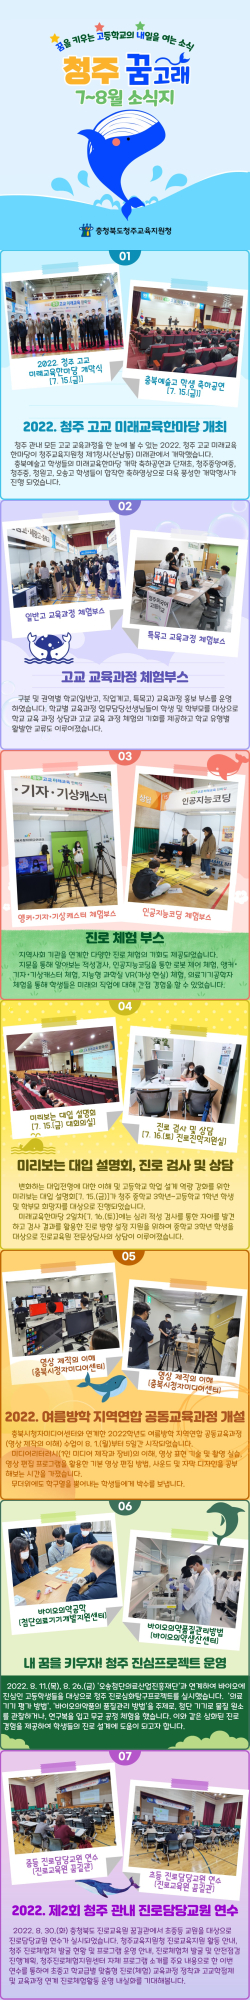 충청북도청주교육지원청 중등교육과_7-8월 청주 꿈고래 카드뉴스